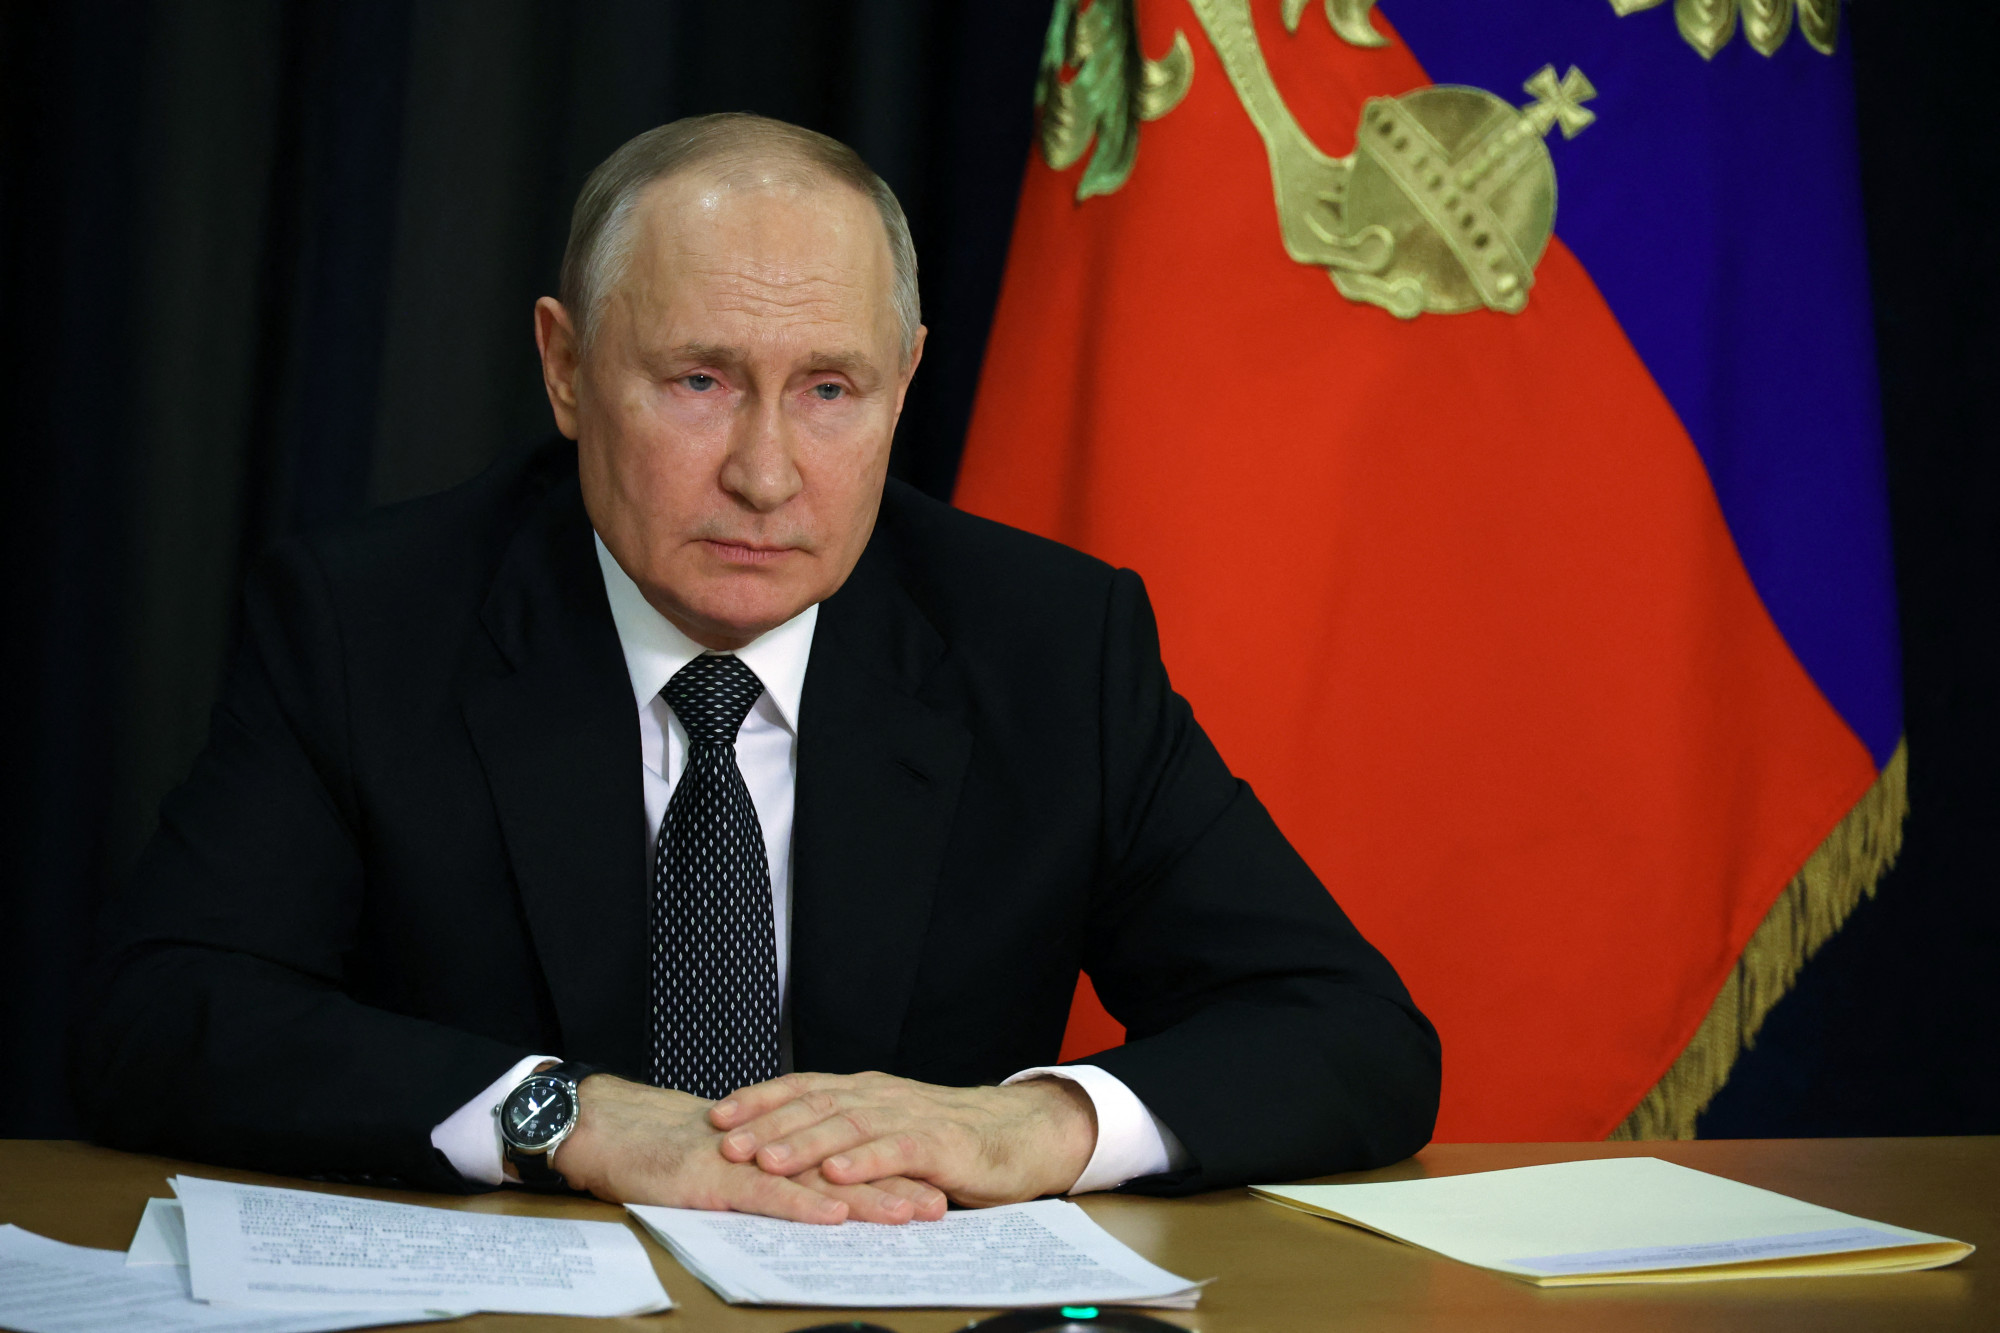 Putyin is a szuverenitásért hirdetett harcot